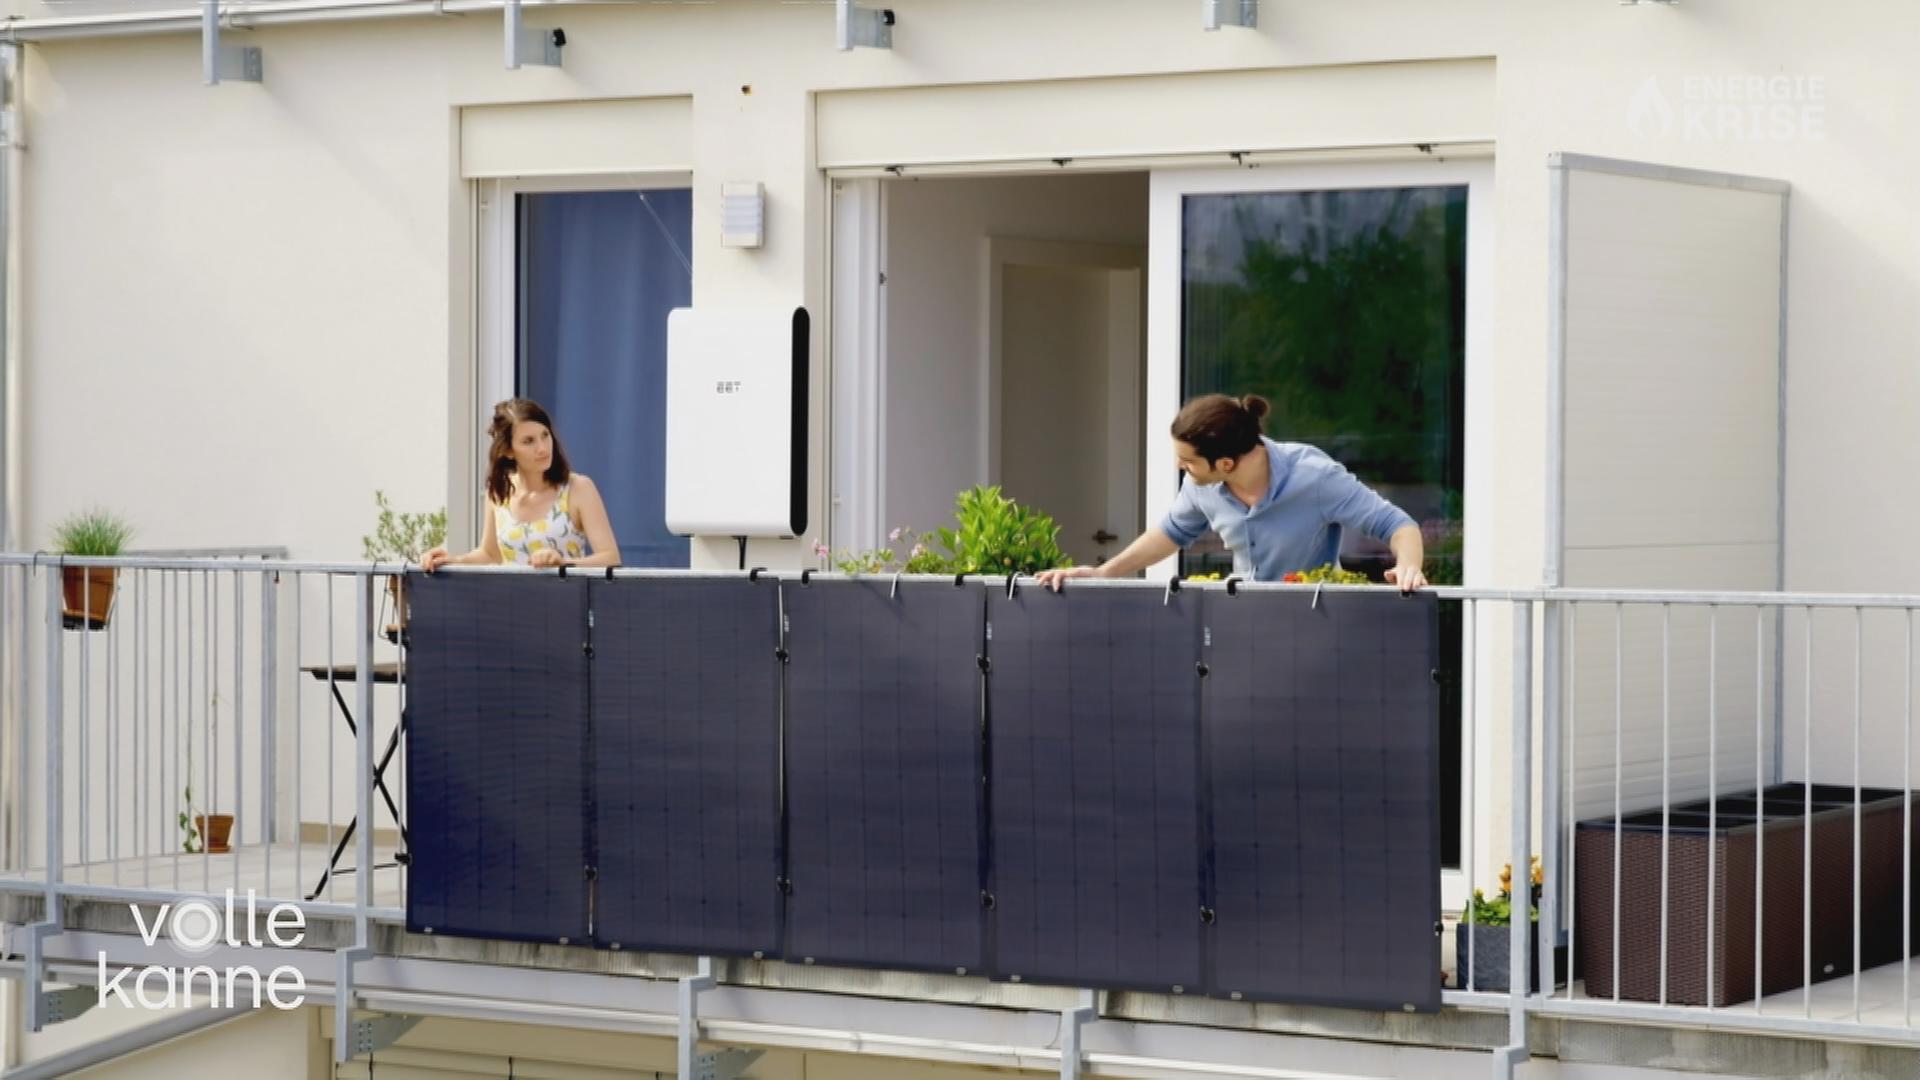 Zwei Frauen stehen auf einem Balkon, an dessen Geländer eine Photovoltaik-Anlage befestigt ist